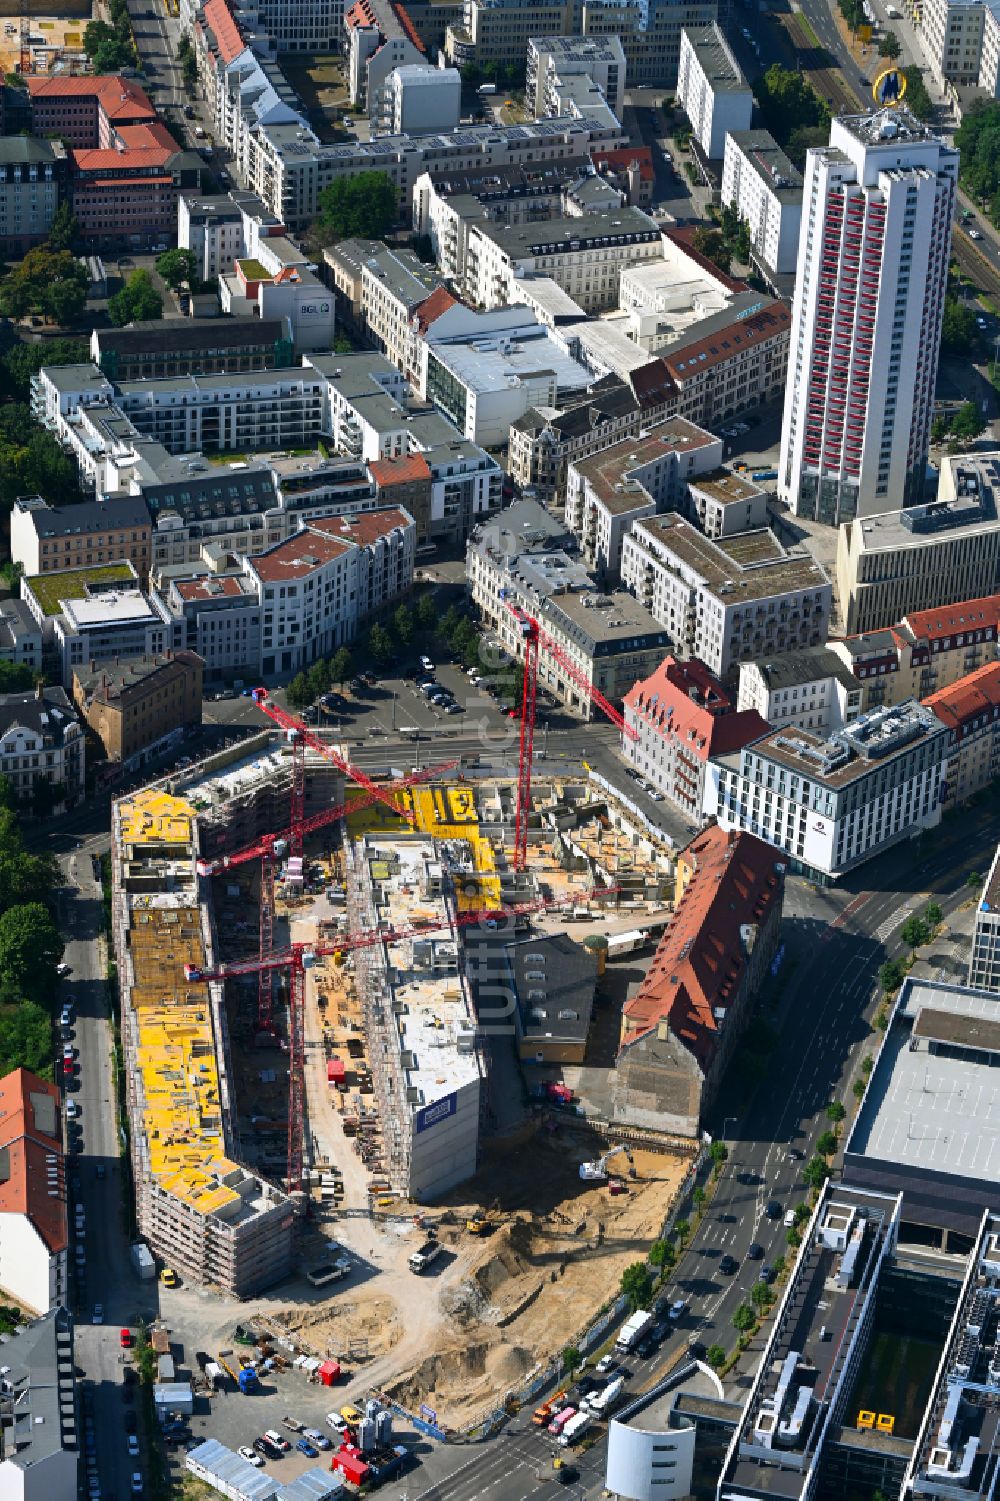 Luftbild Leipzig - Baustellen zum Neubau eines Stadtquartiers Krystallpalast-Areal in Leipzig im Bundesland Sachsen, Deutschland